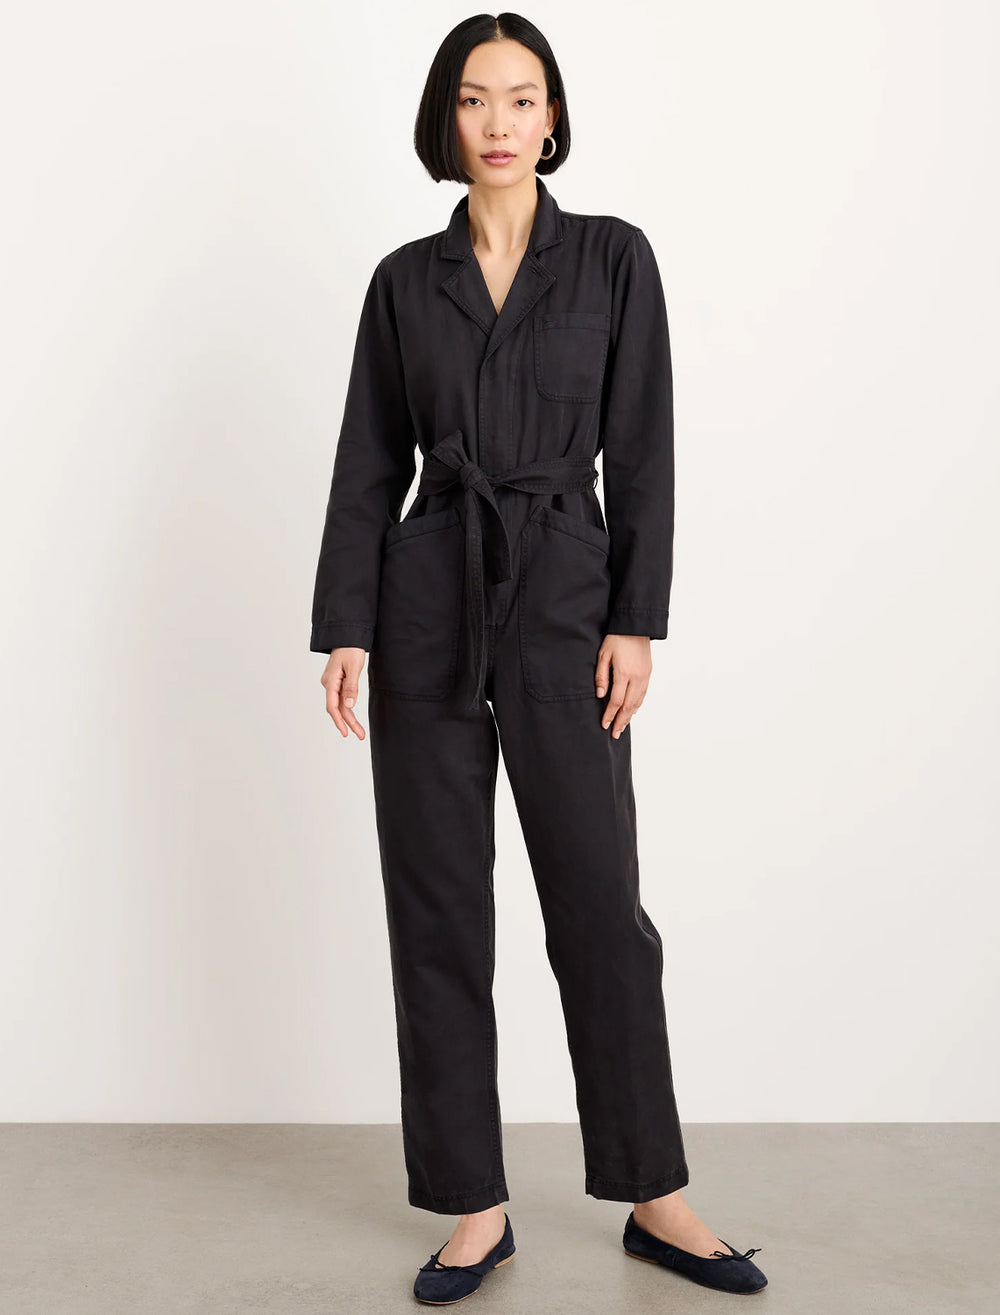 Model wearing Alex Mill's standard zip jumpsuit in black.